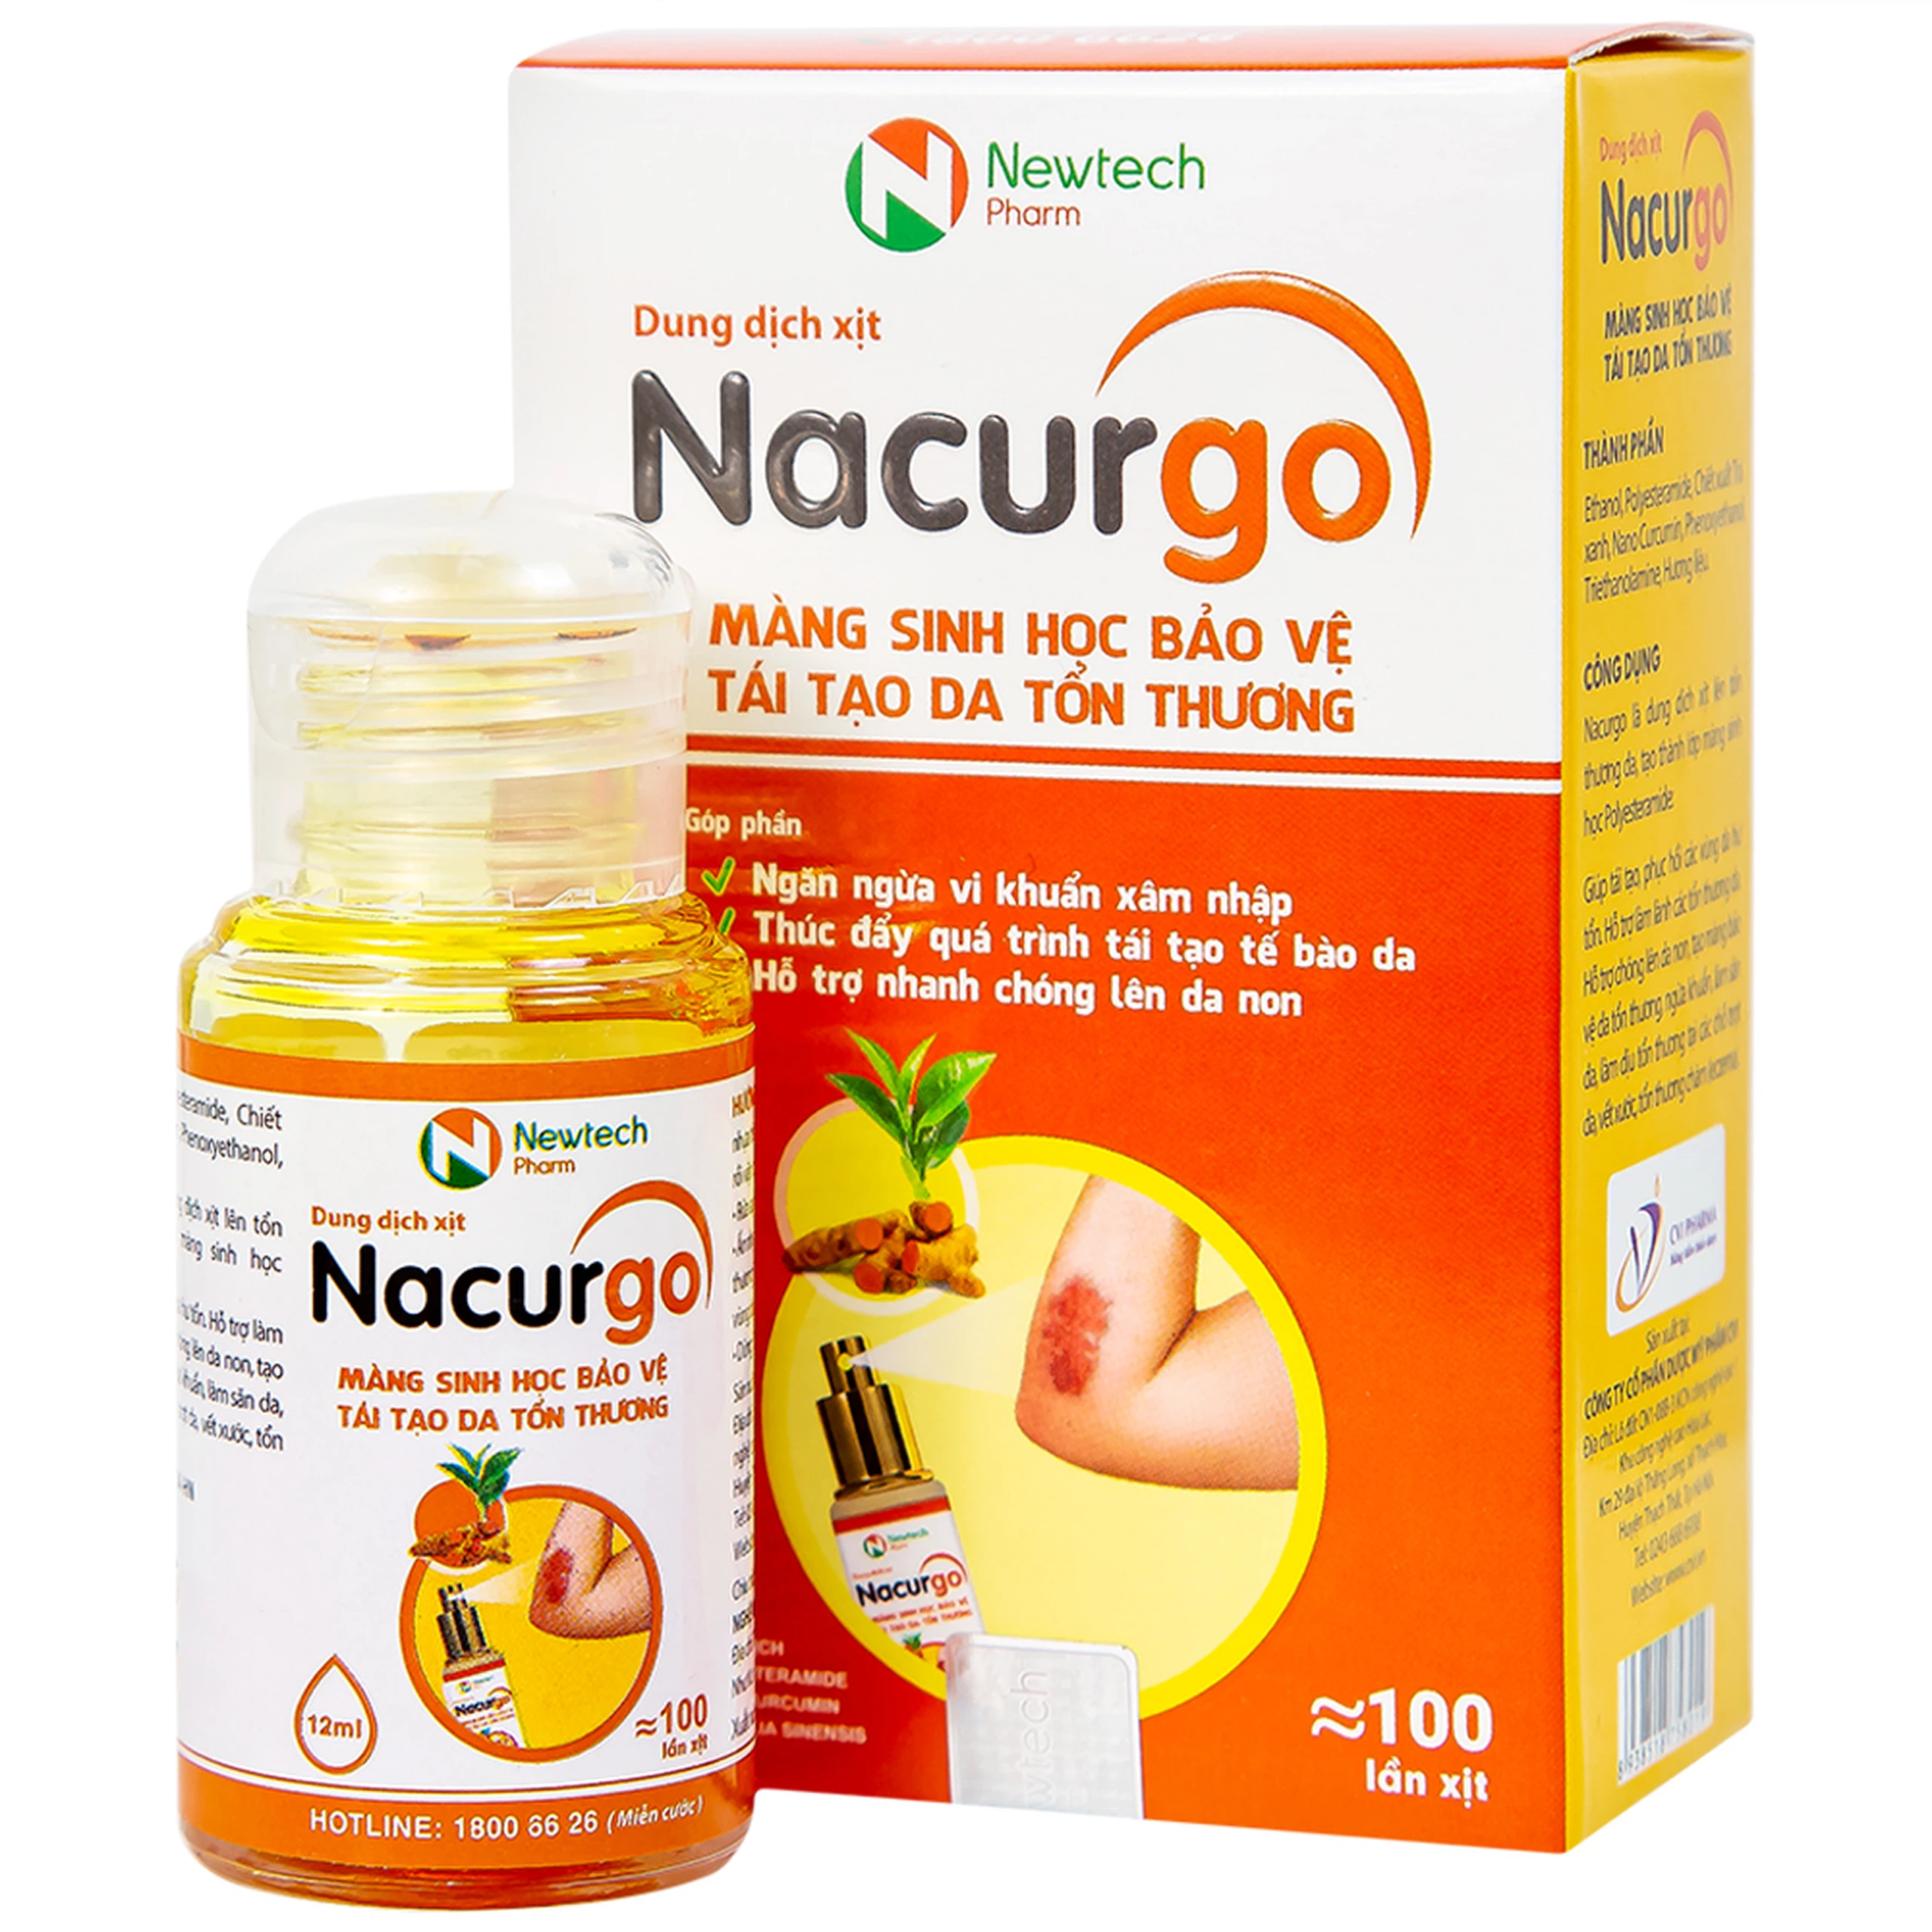 Dung dịch xịt Nacurgo màng sinh học bảo vệ, tái tạo da tổn thương (100 lần xịt)